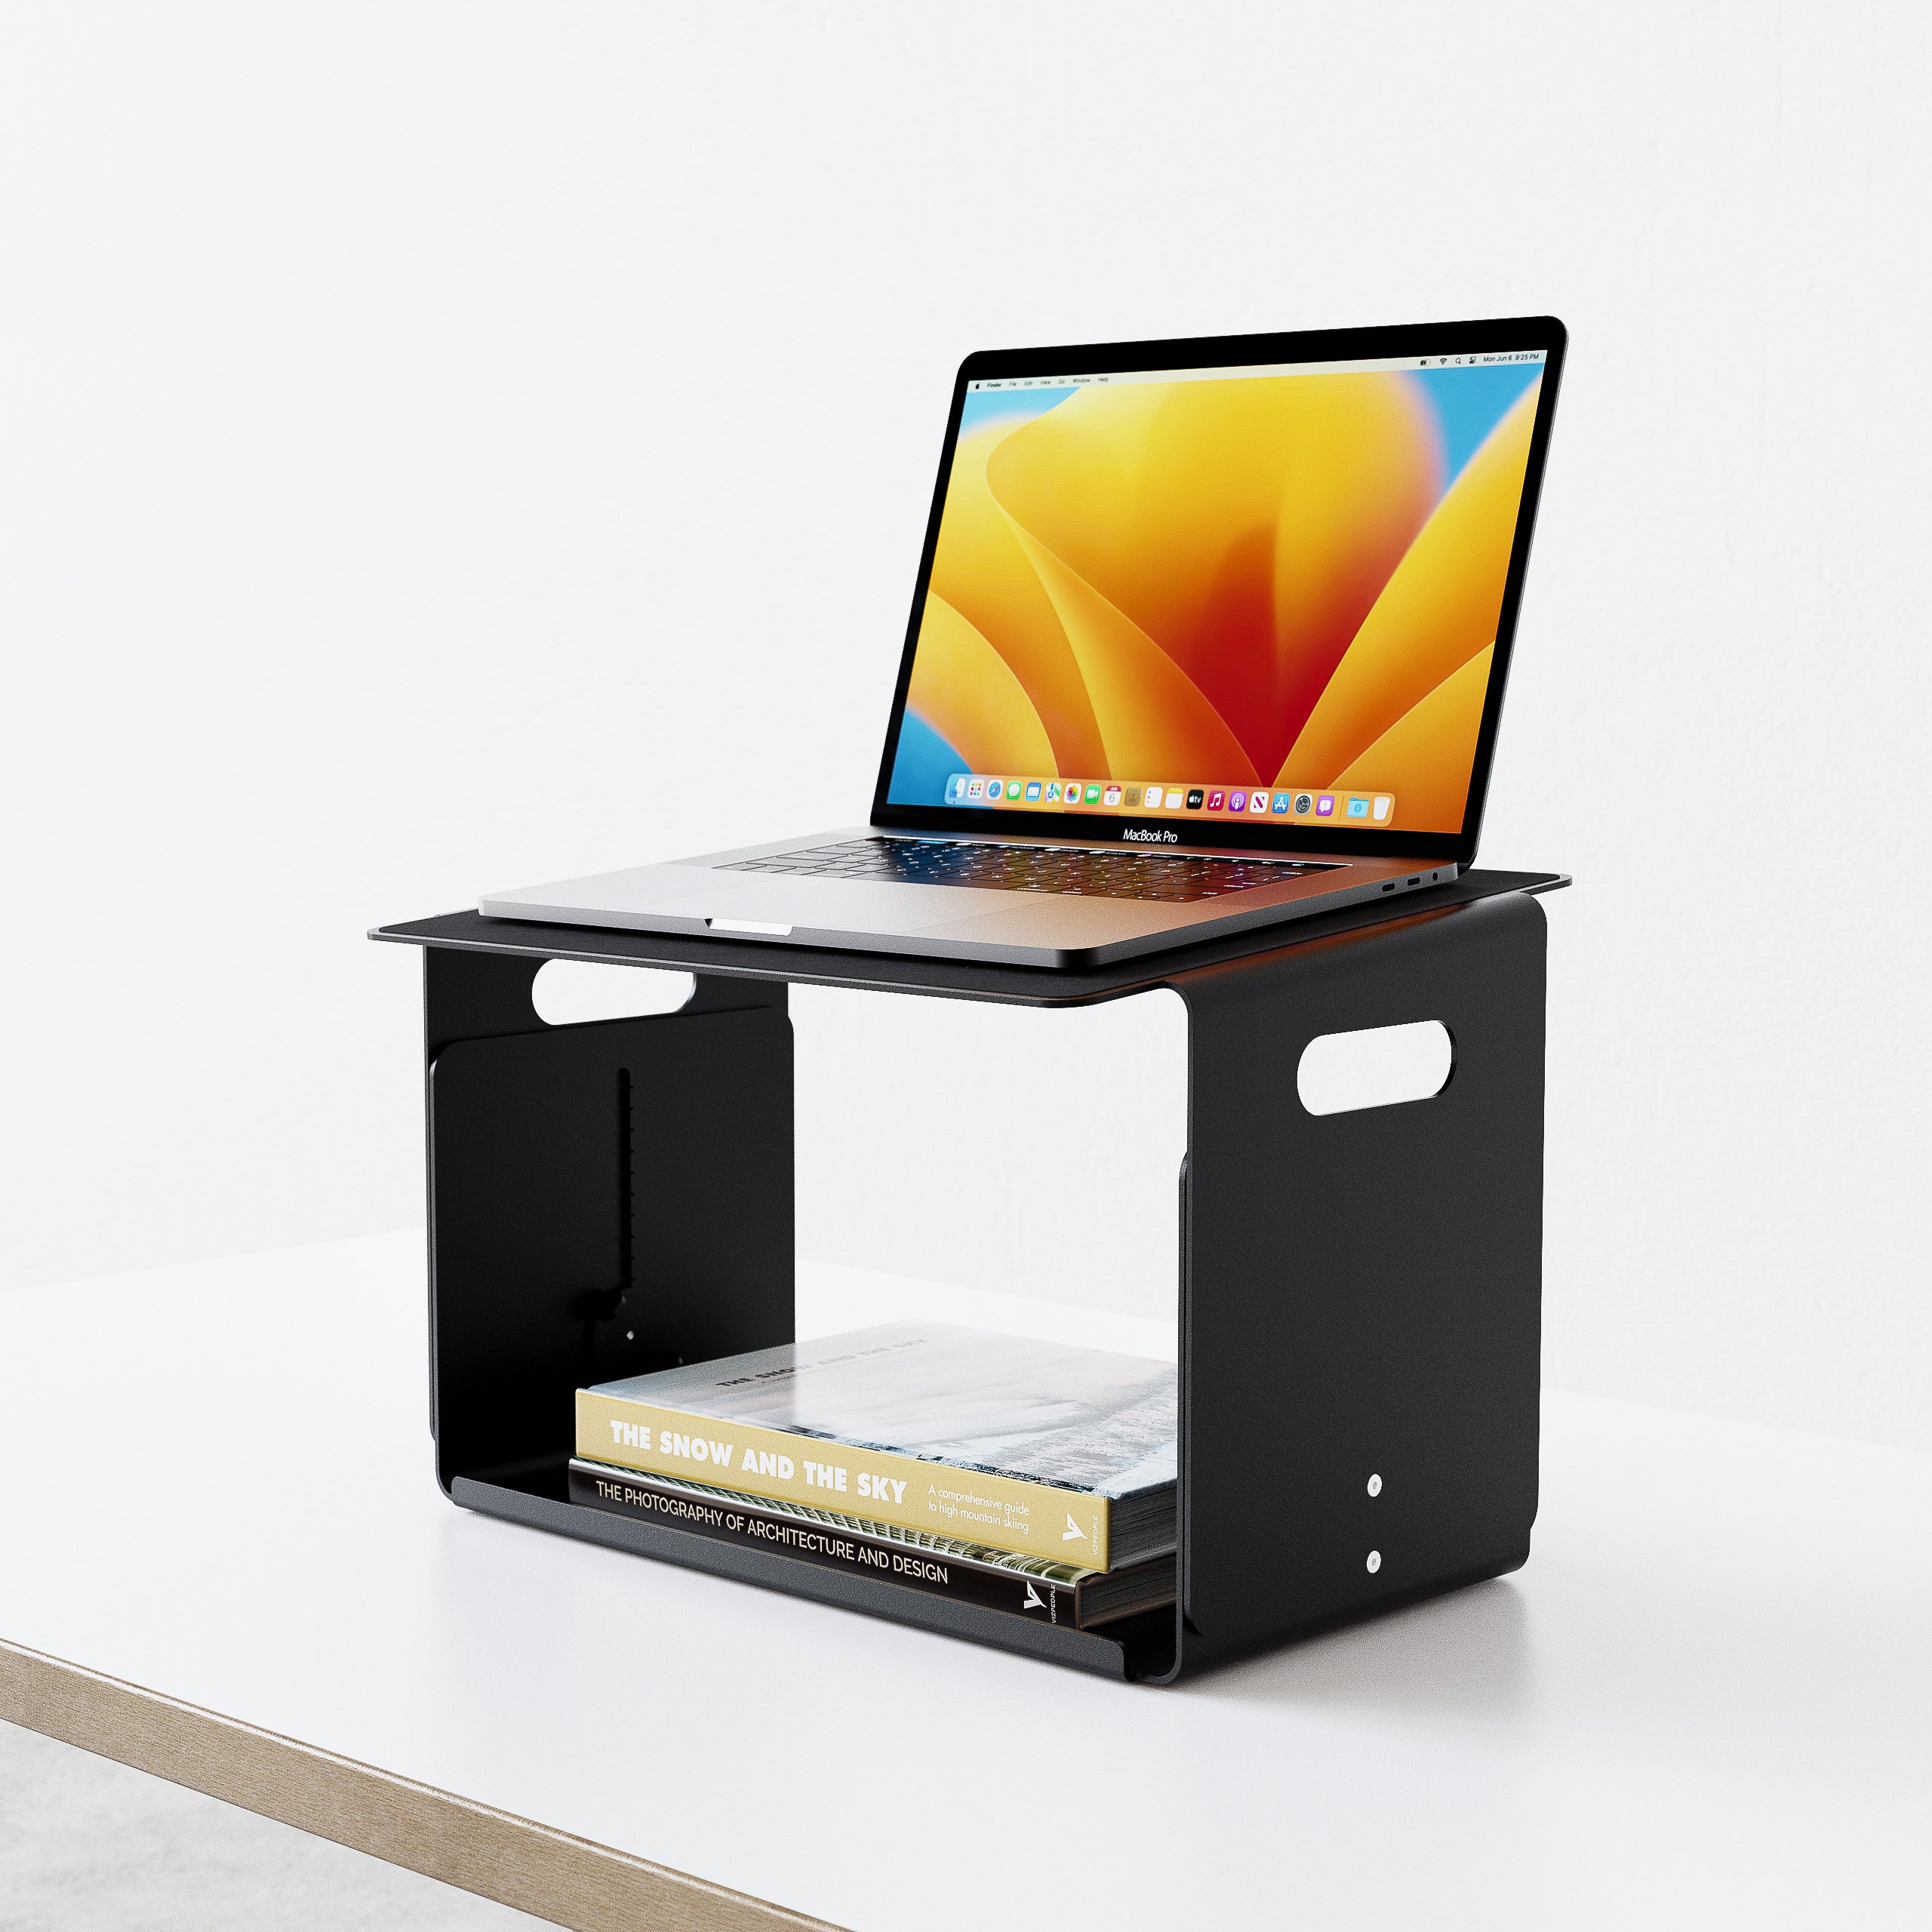 FLEX Schreibtischaufsatz schwarz, ist eine höhenverstellbare Laptopablage. In verschiedenen farben erhältlich, aus Metall, ökologisch, pulverbeschichtet, Home, Office , Home Office, SYSBOARD